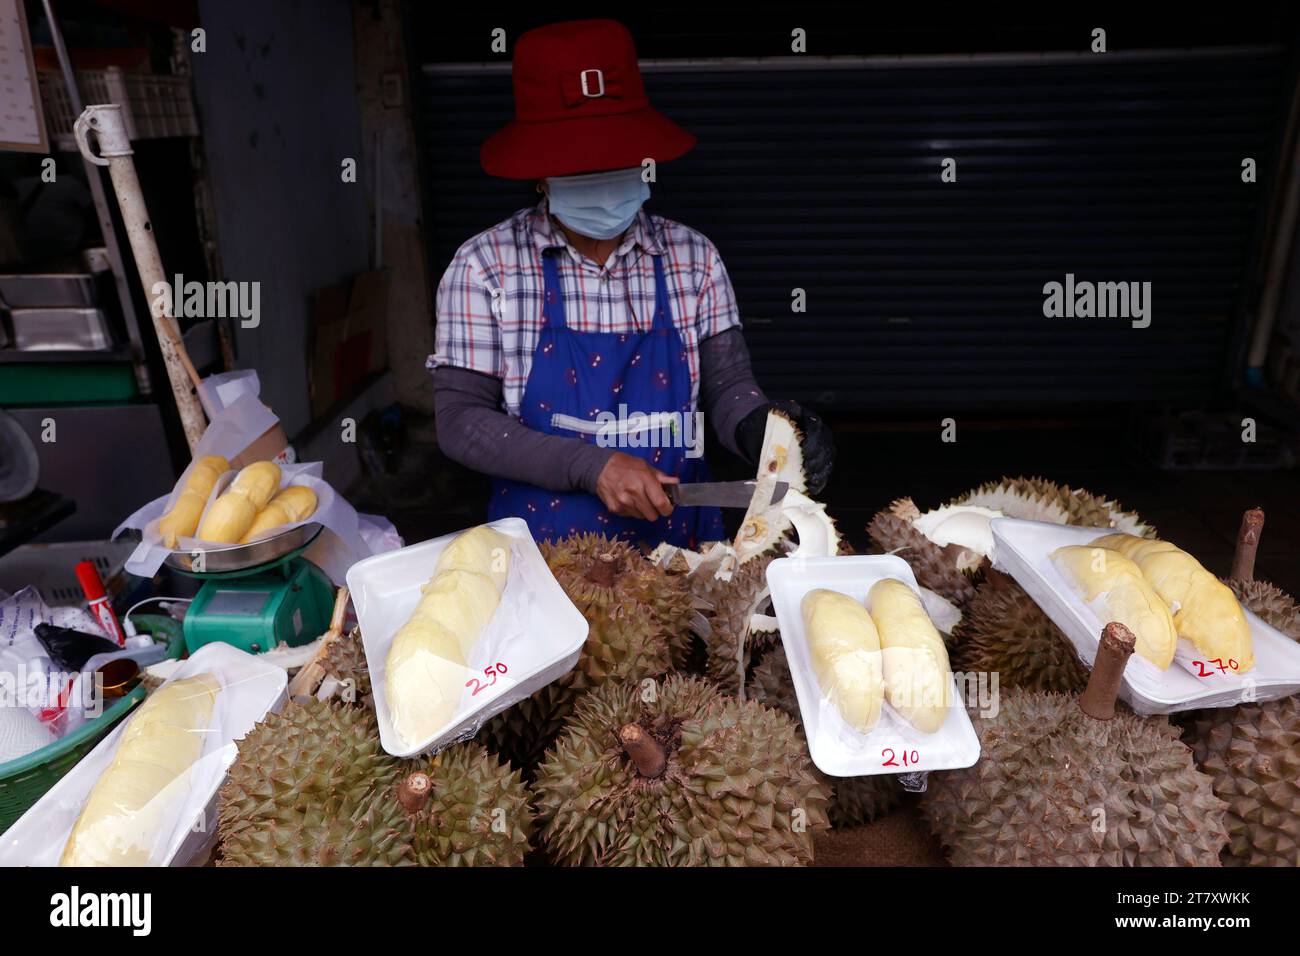 Una donna prepara la frutta Durian per la vendita in una bancarella di Street food popolare tra turisti e locali, Bangkok, Thailandia, Sud-est asiatico, Asia Foto Stock